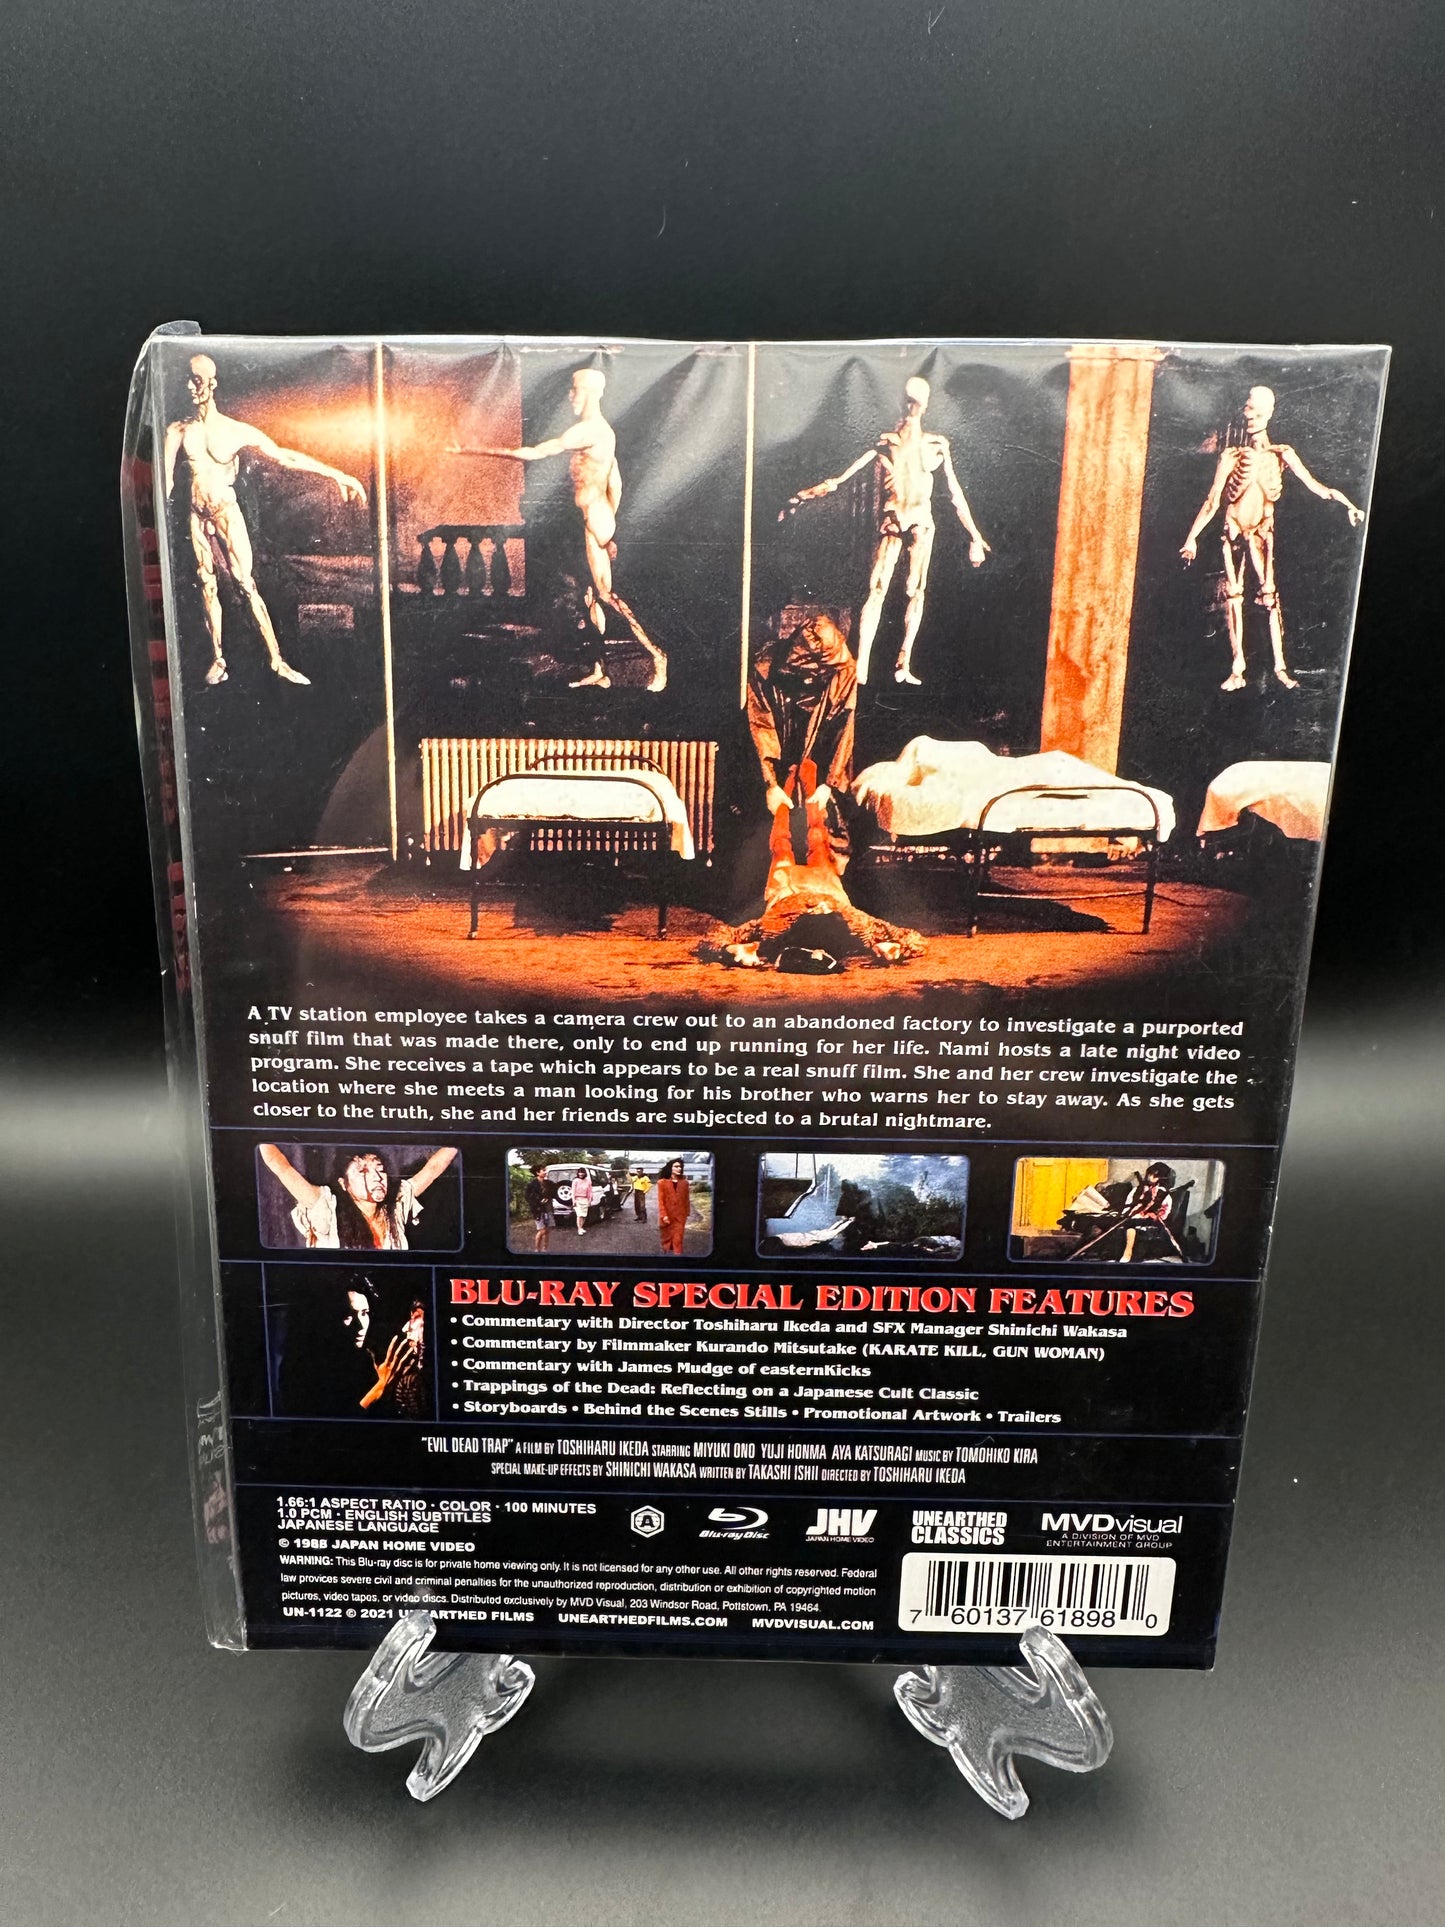 Evil Dead Trap (Collectors Edition Blu Ray)